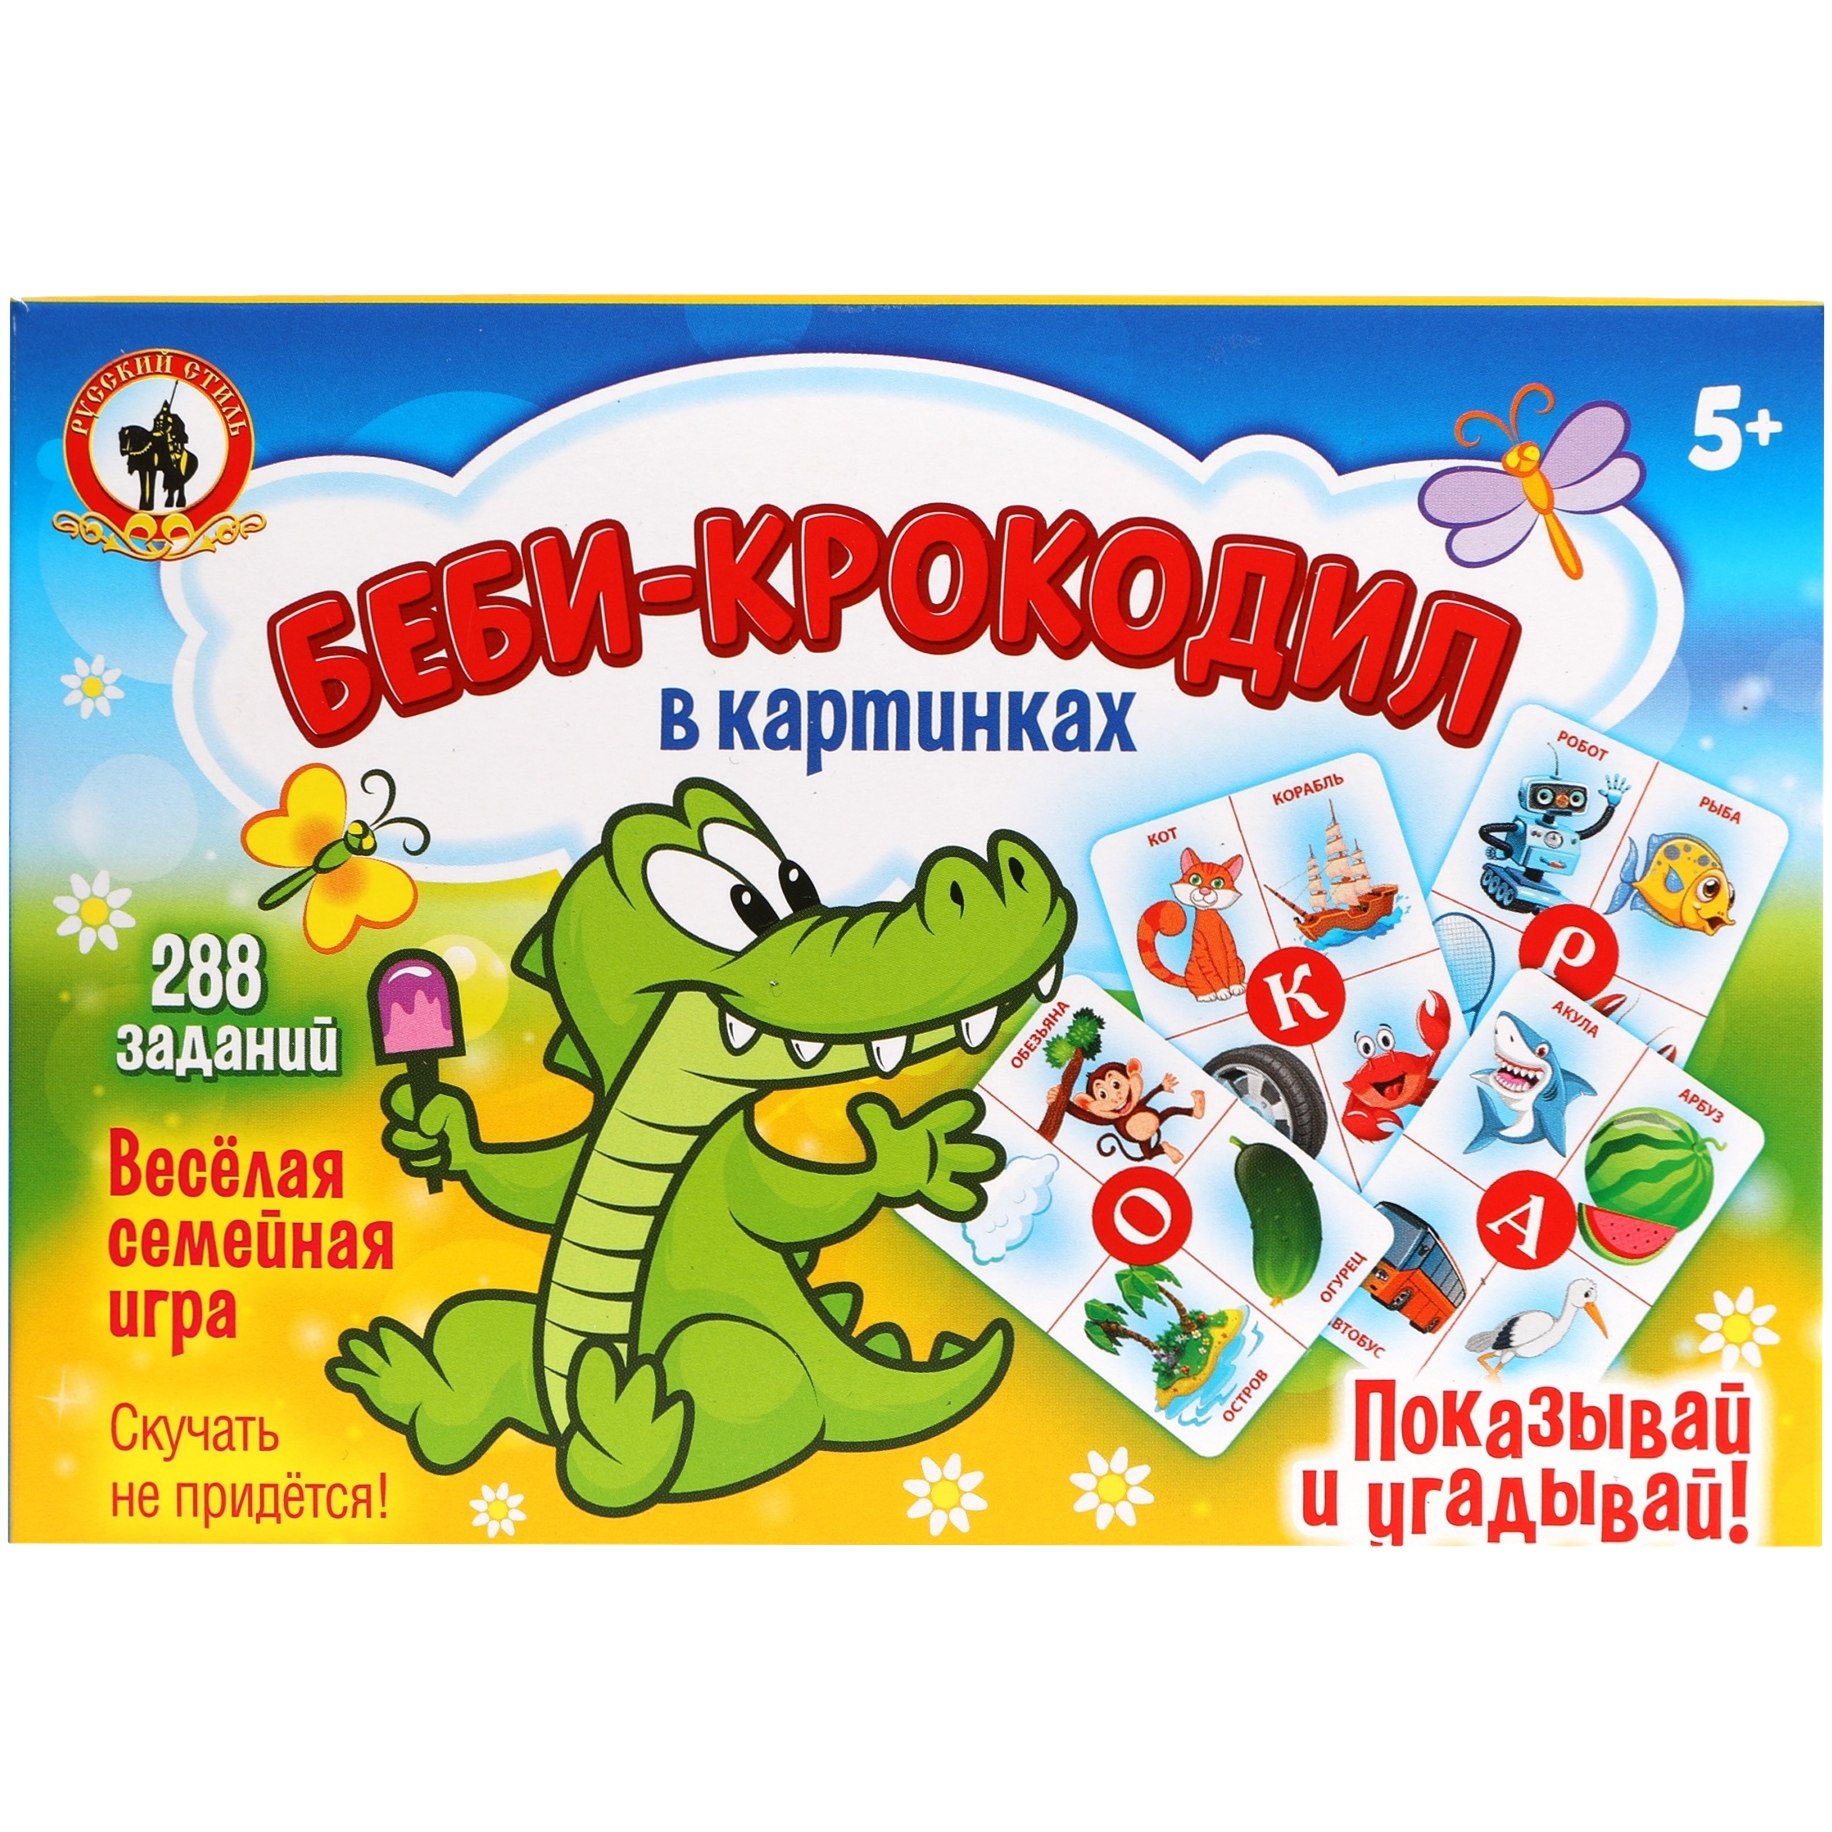 Картинки для игры в крокодил для детей